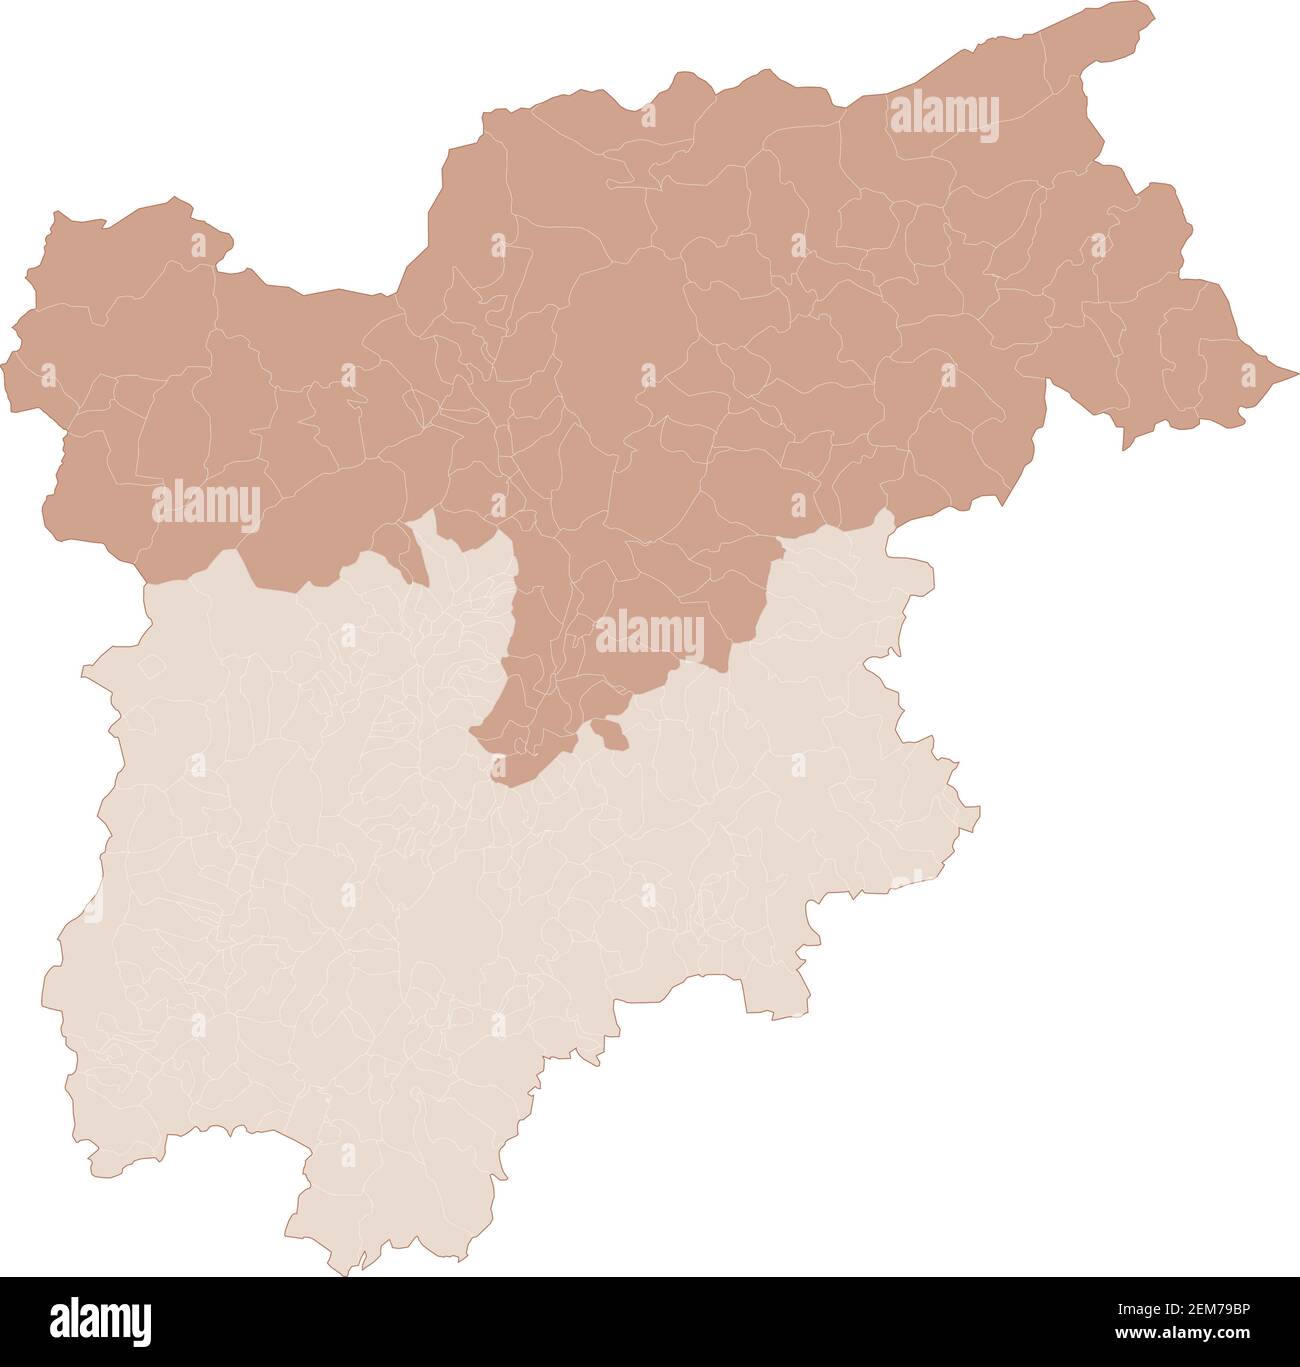 Mappa del Trentino-Alto Adige, divisione per province e comuni. Poligoni chiusi e perfettamente modificabili, riempimento poligono e tracciati di colore modificabili Illustrazione Vettoriale